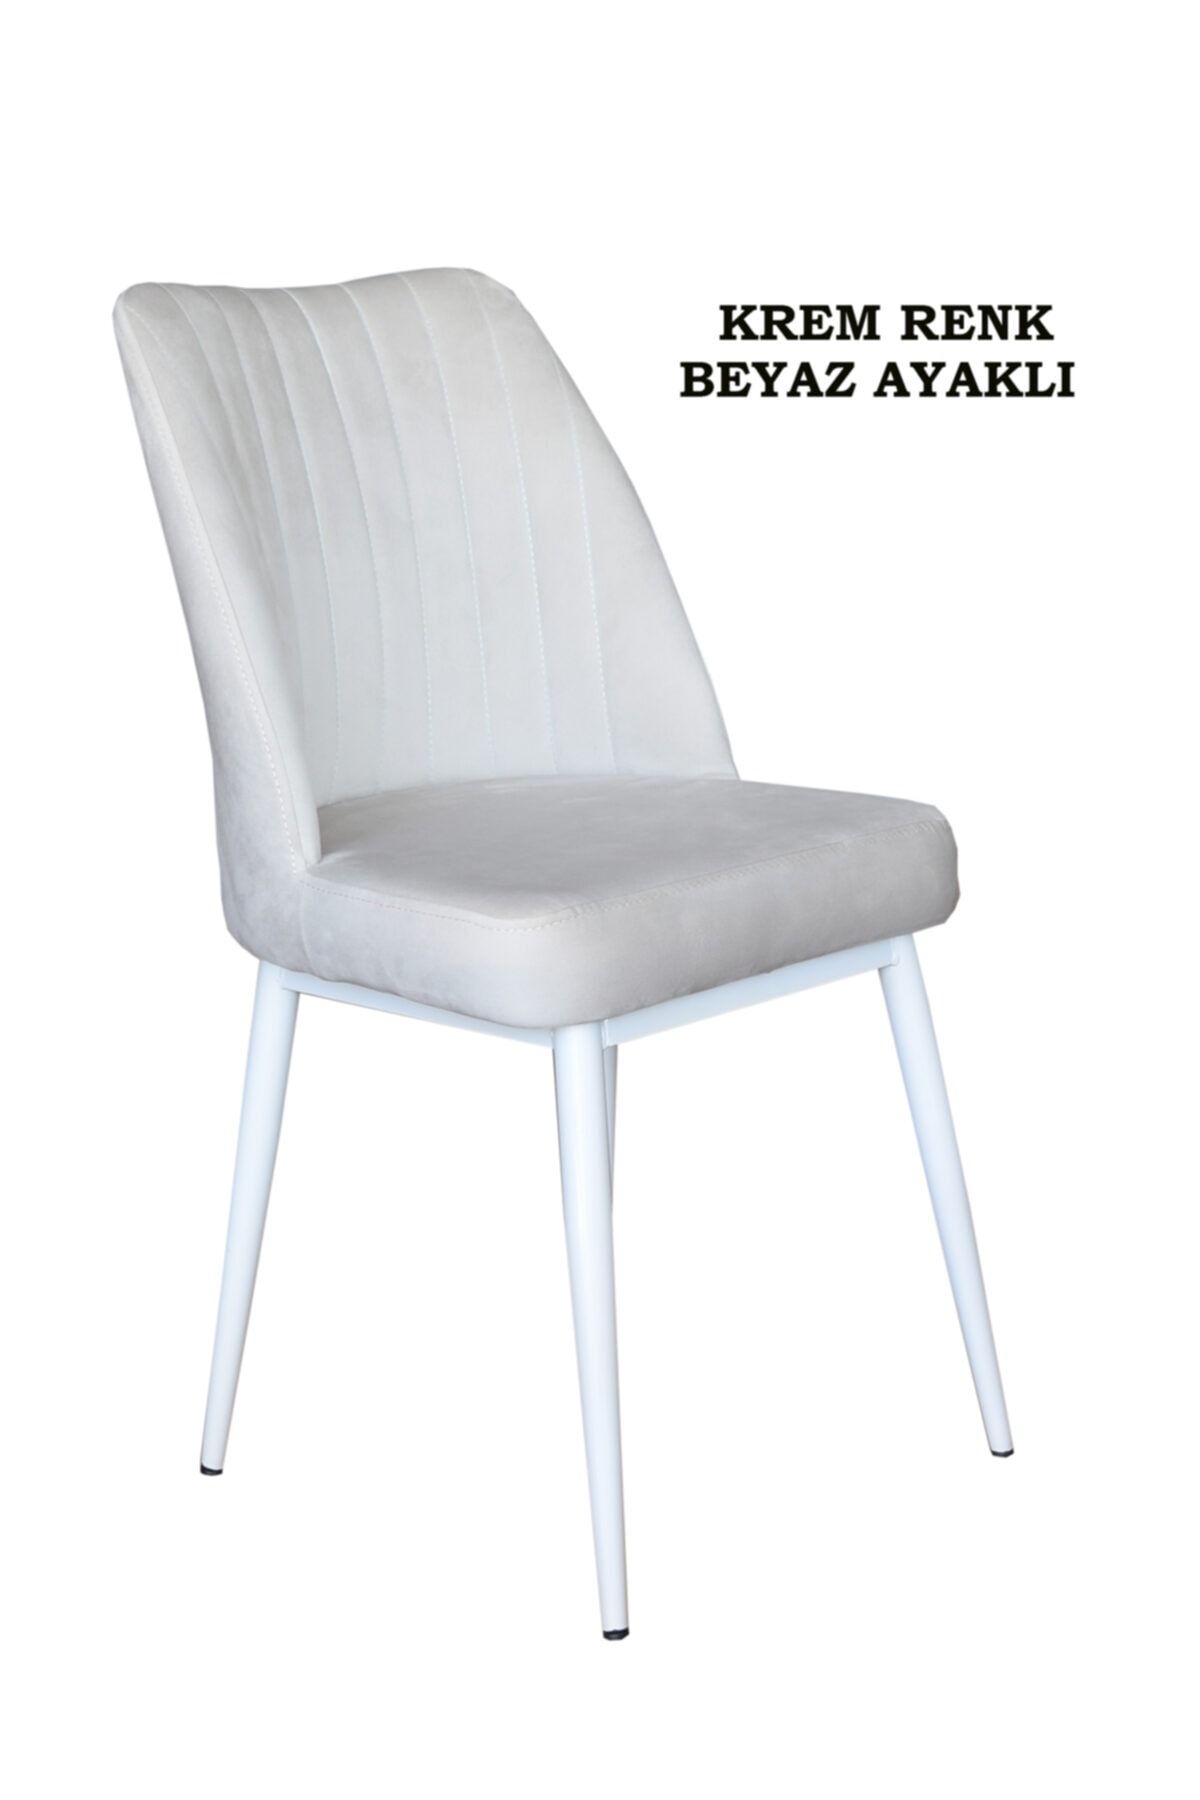 Ankhira Elit Sandalye, Mutfak Ve Salon Sandalyesi, Silinebilir Krem Renk Kumaş, Beyaz Ayaklı